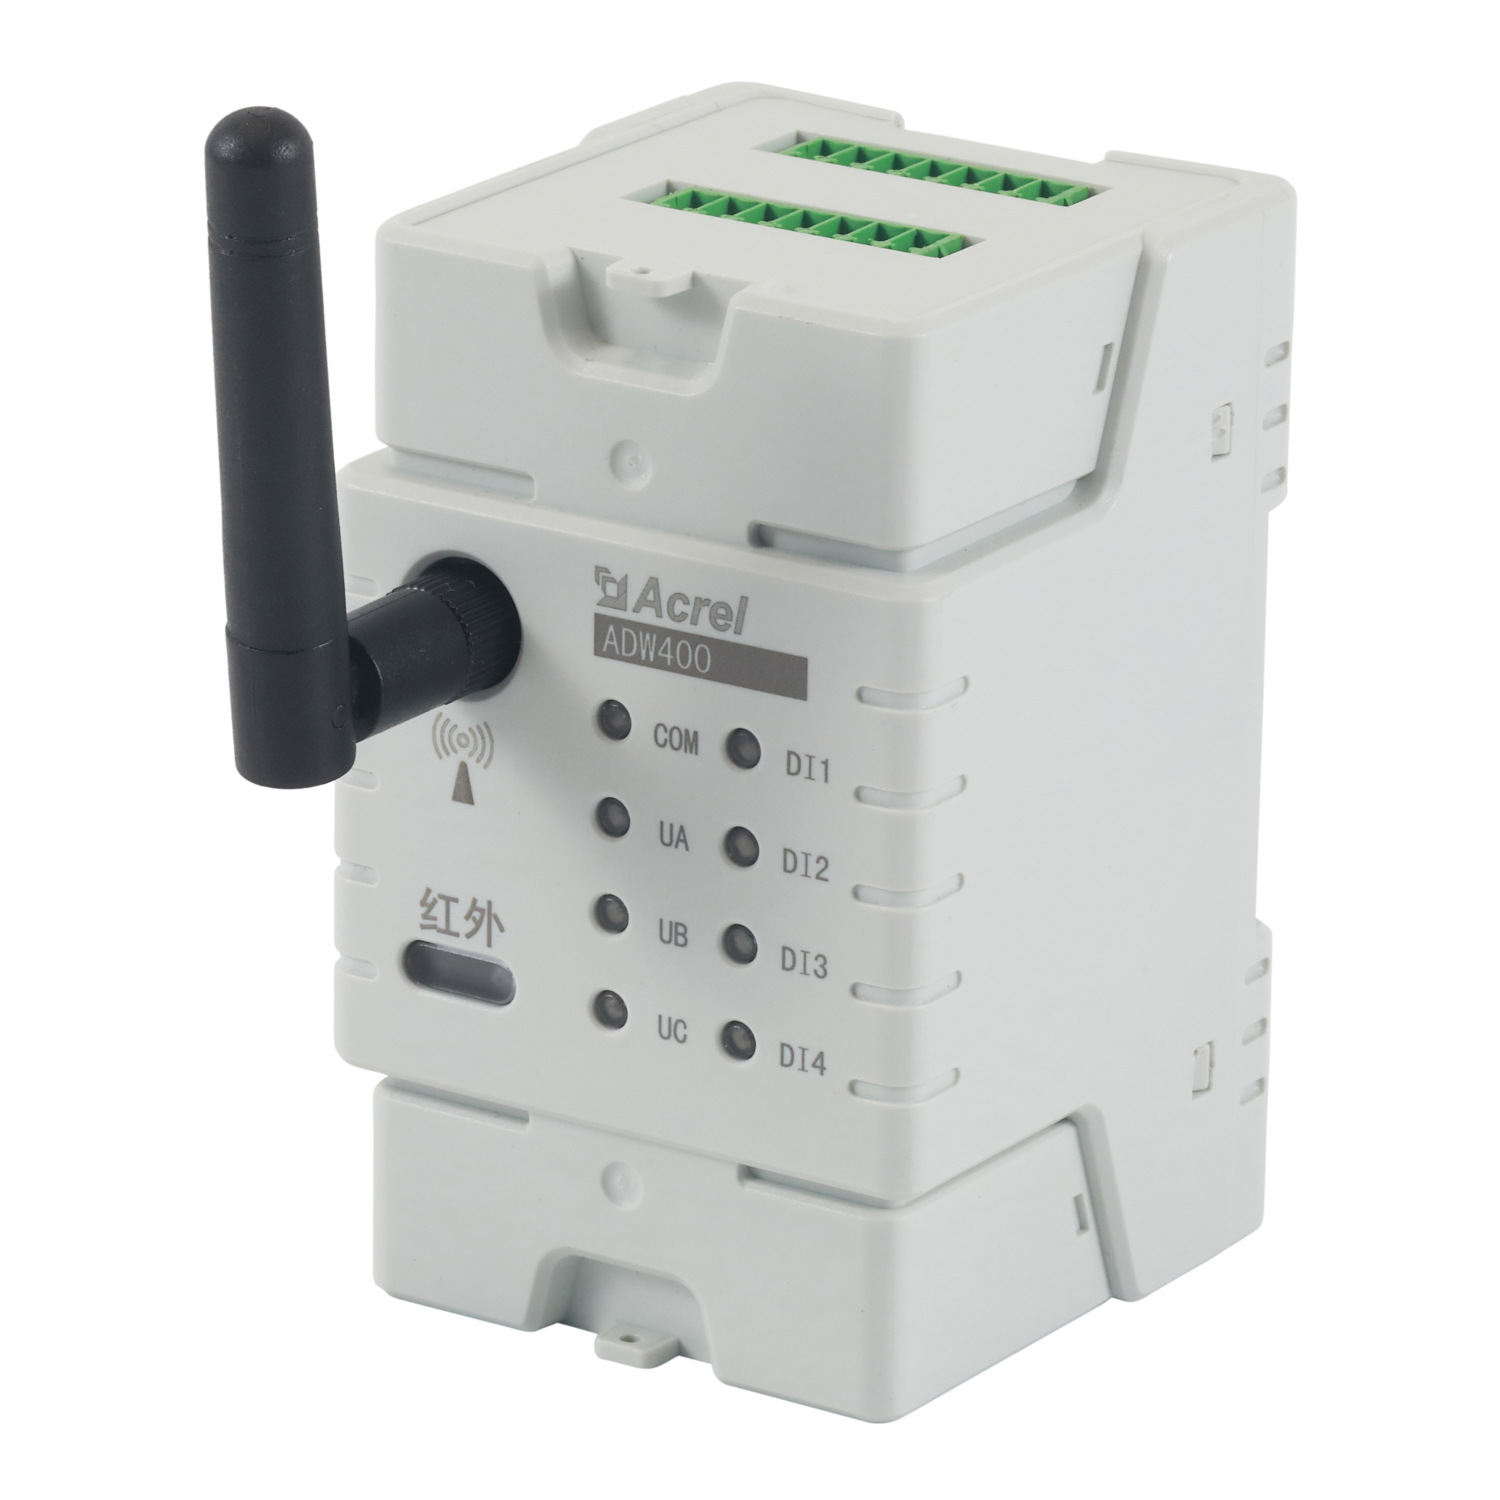 环保监测模块安科瑞ADW400-D10-3S 污染防治设施用电检测仪表